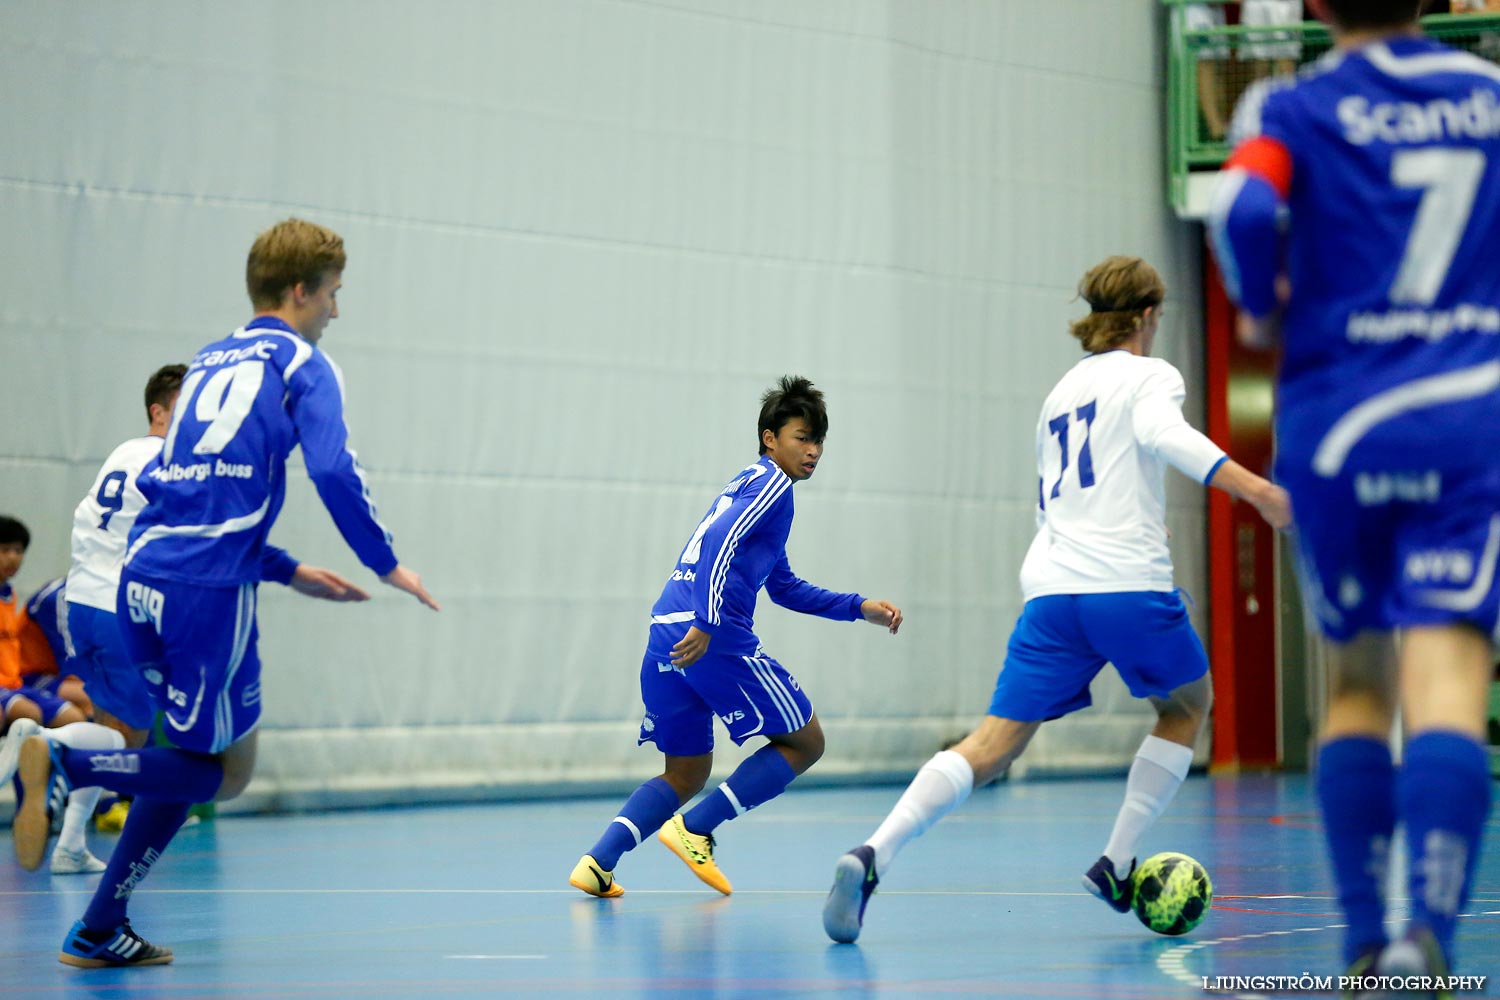 Skövde Futsalcup Herrjuniorer IFK Skövde FK-Skara FC,herr,Arena Skövde,Skövde,Sverige,Skövde Futsalcup 2014,Futsal,2014,98970